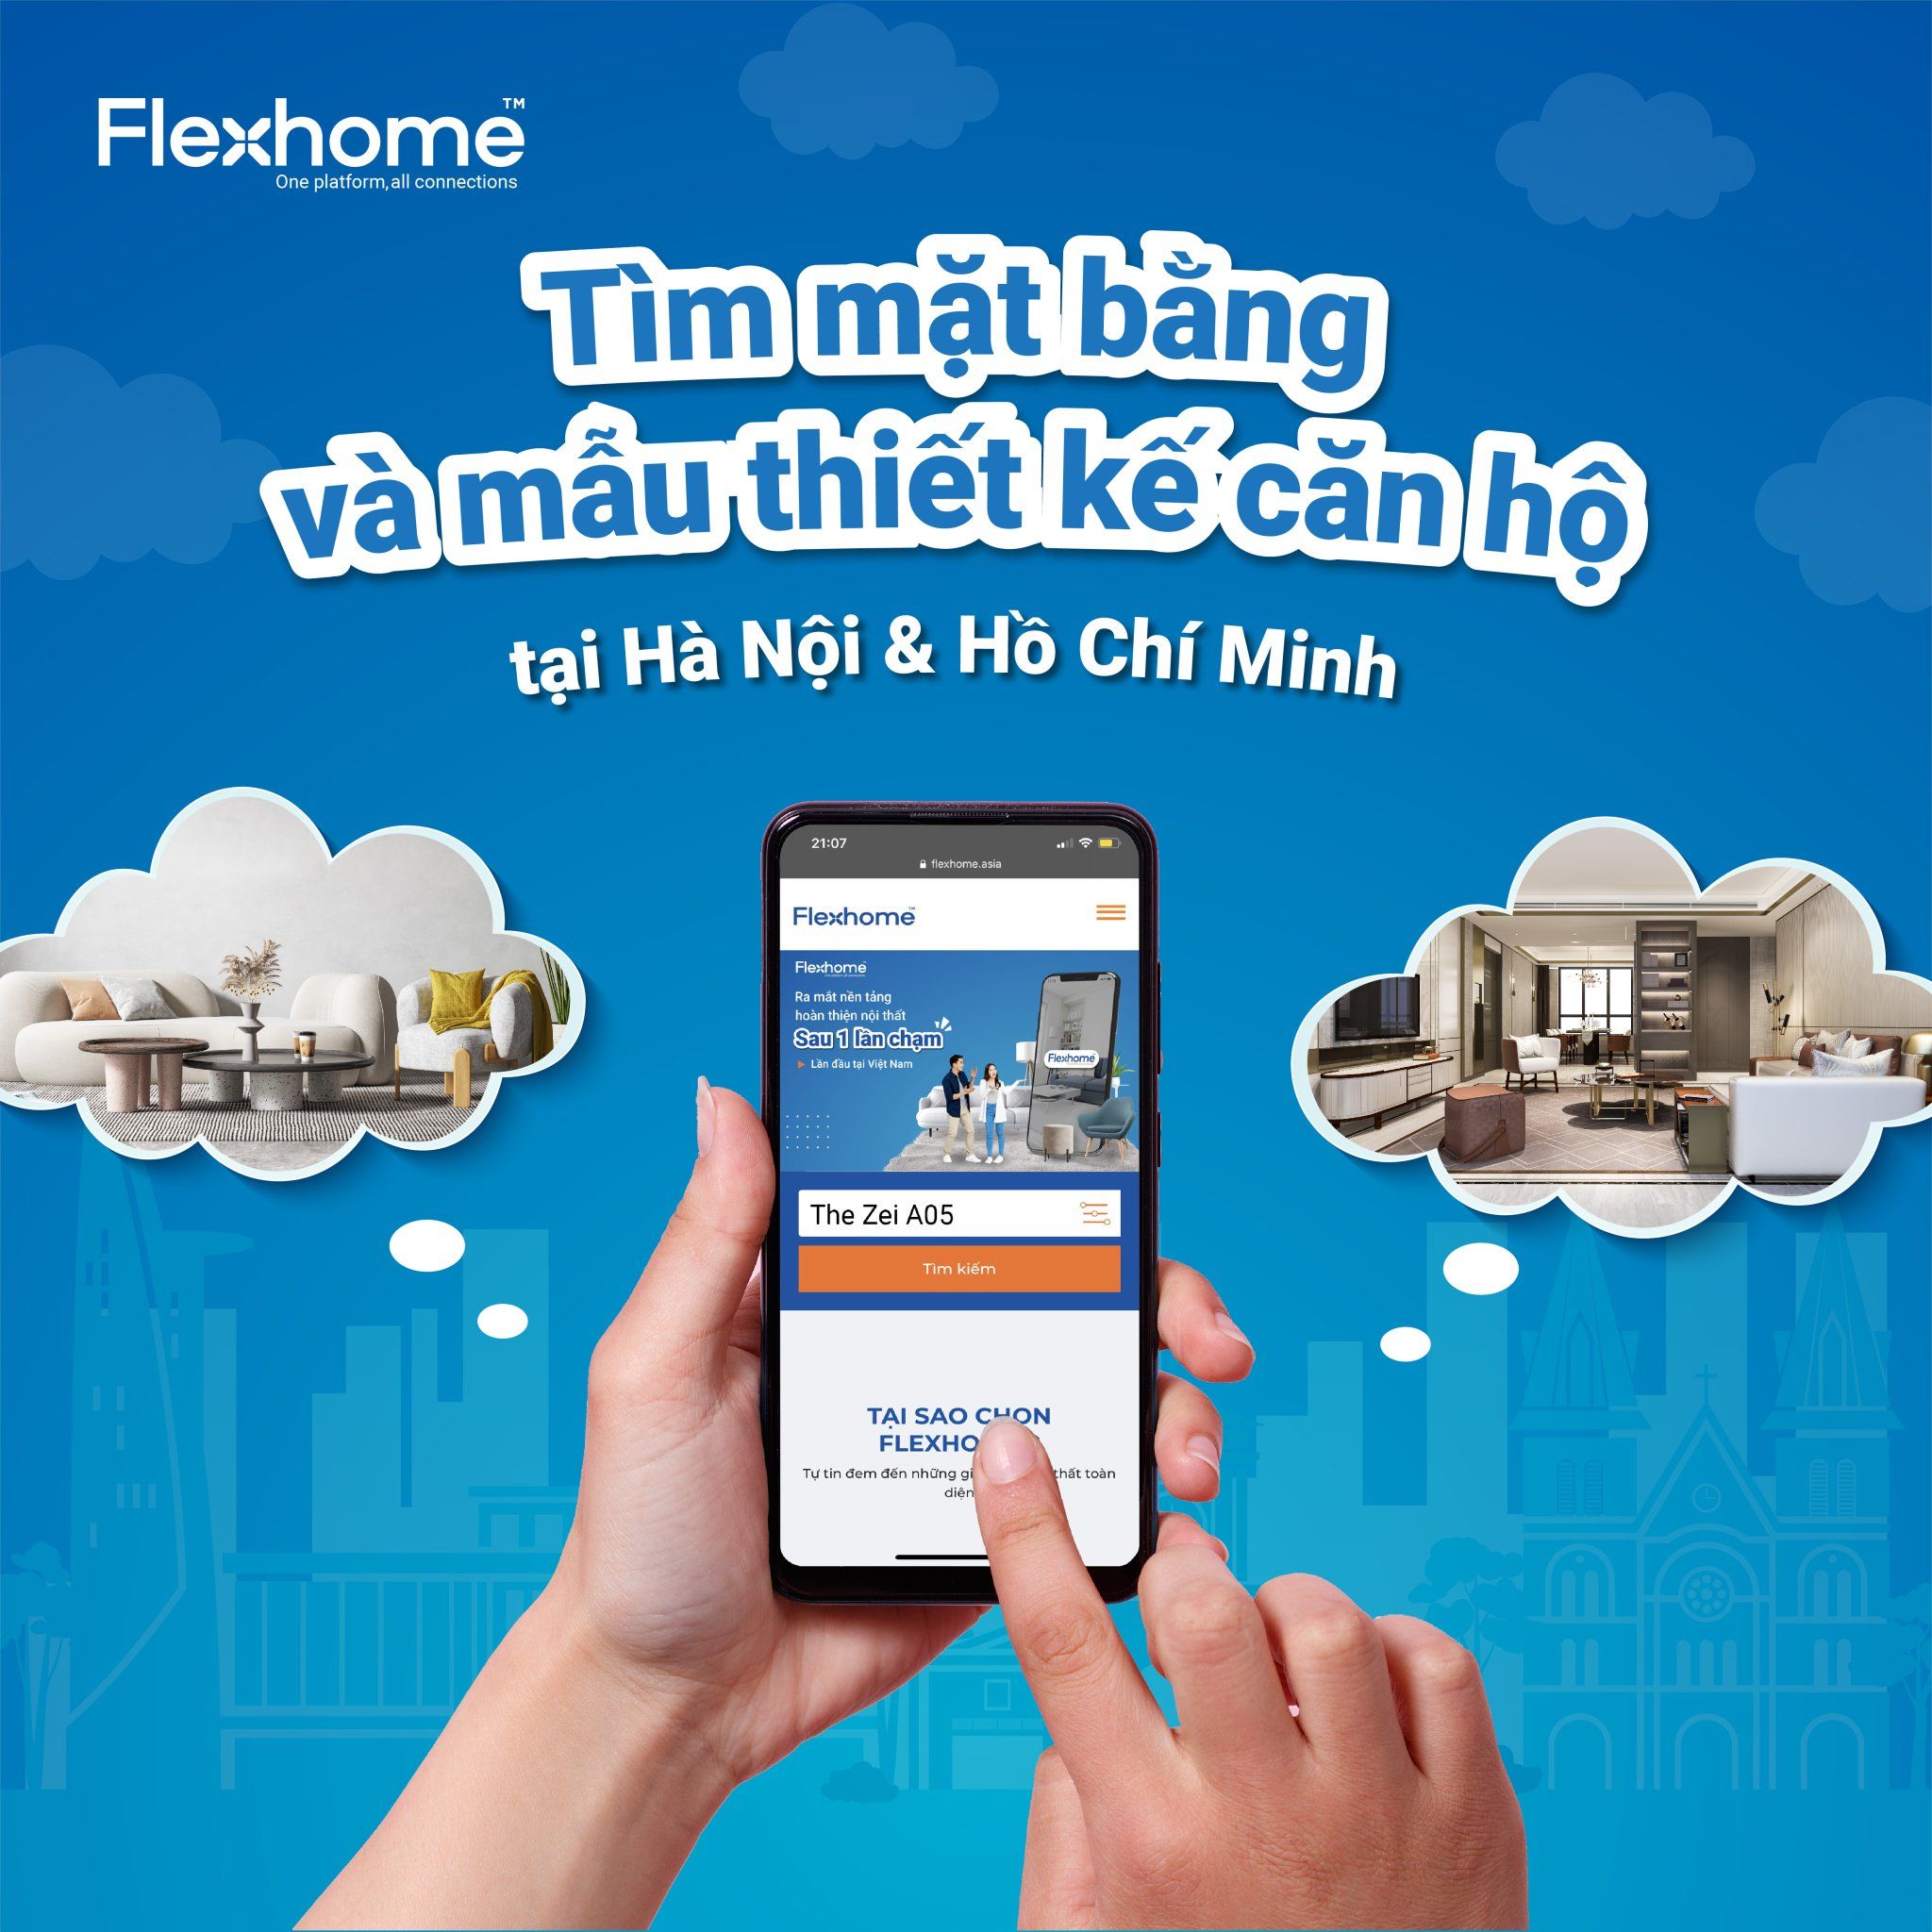 Flexhome cung cấp mẫu thiết kế căn hộ "chính chủ"